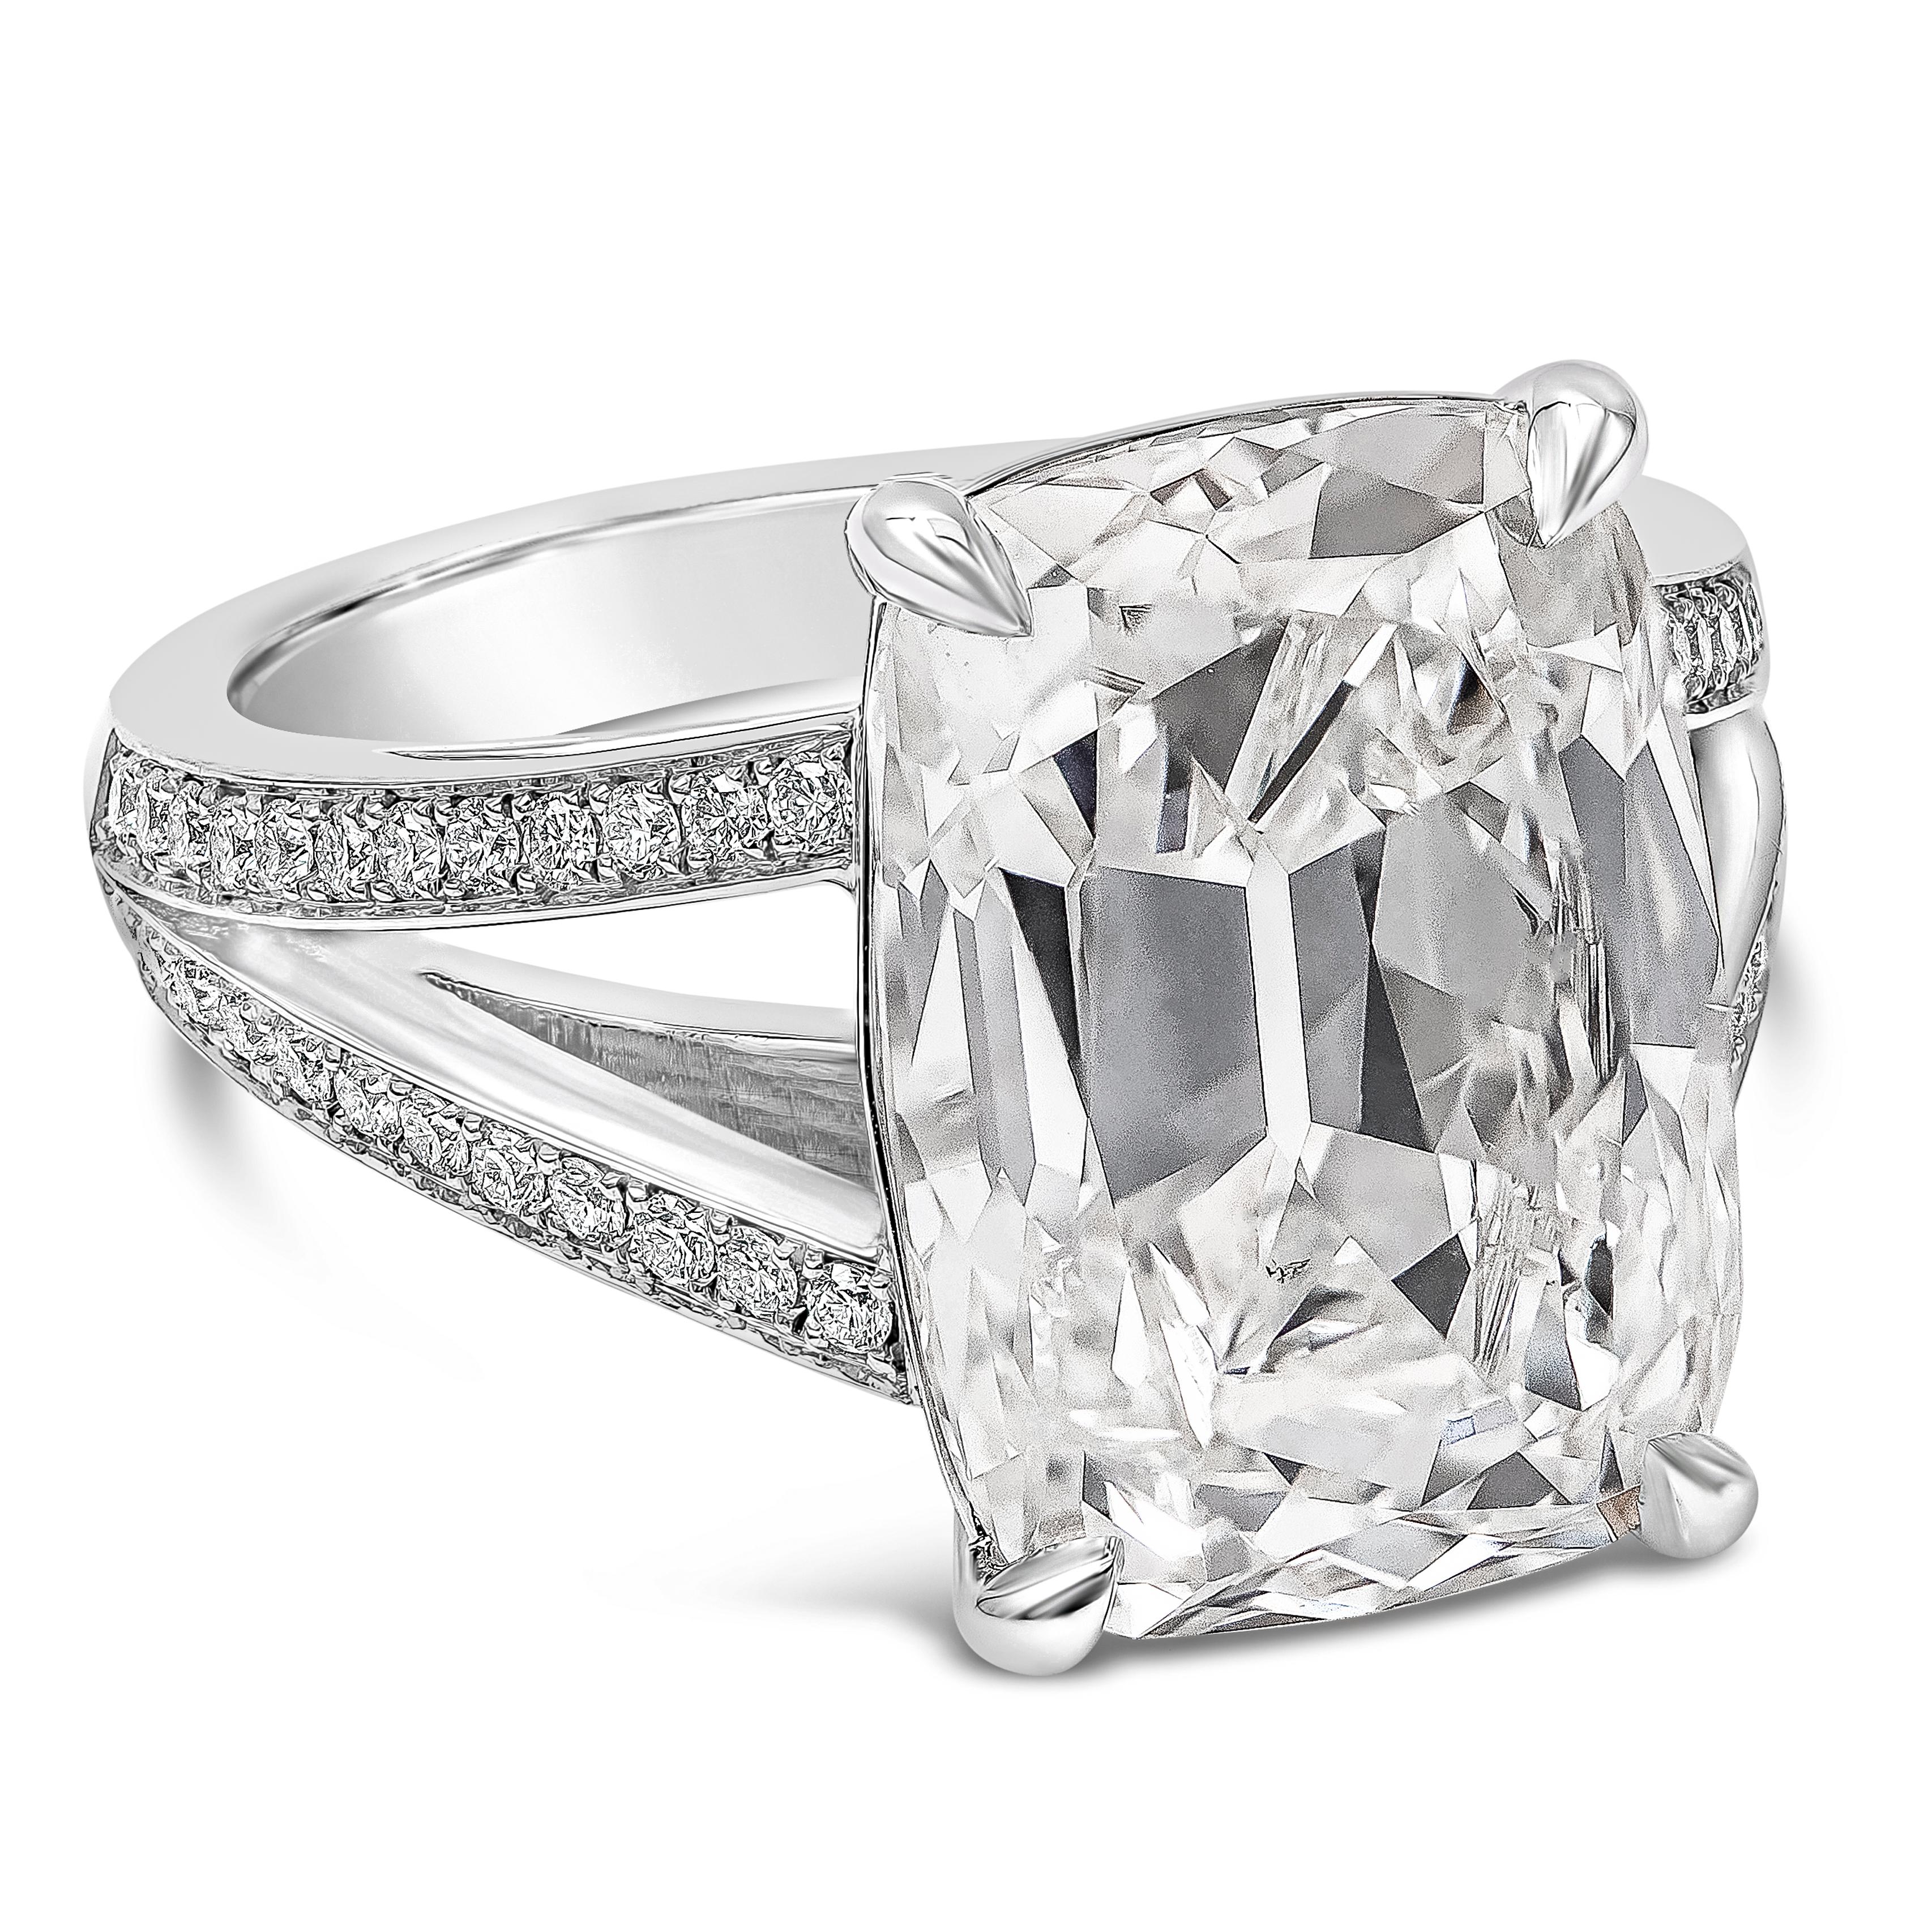 Une magnifique bague de fiançailles mettant en valeur un diamant de taille coussin allongé de 10,09 carats certifié par le GIA, de couleur I et de pureté SI1. Le diamant central est serti dans une monture à quatre griffes et une monture fendue faite